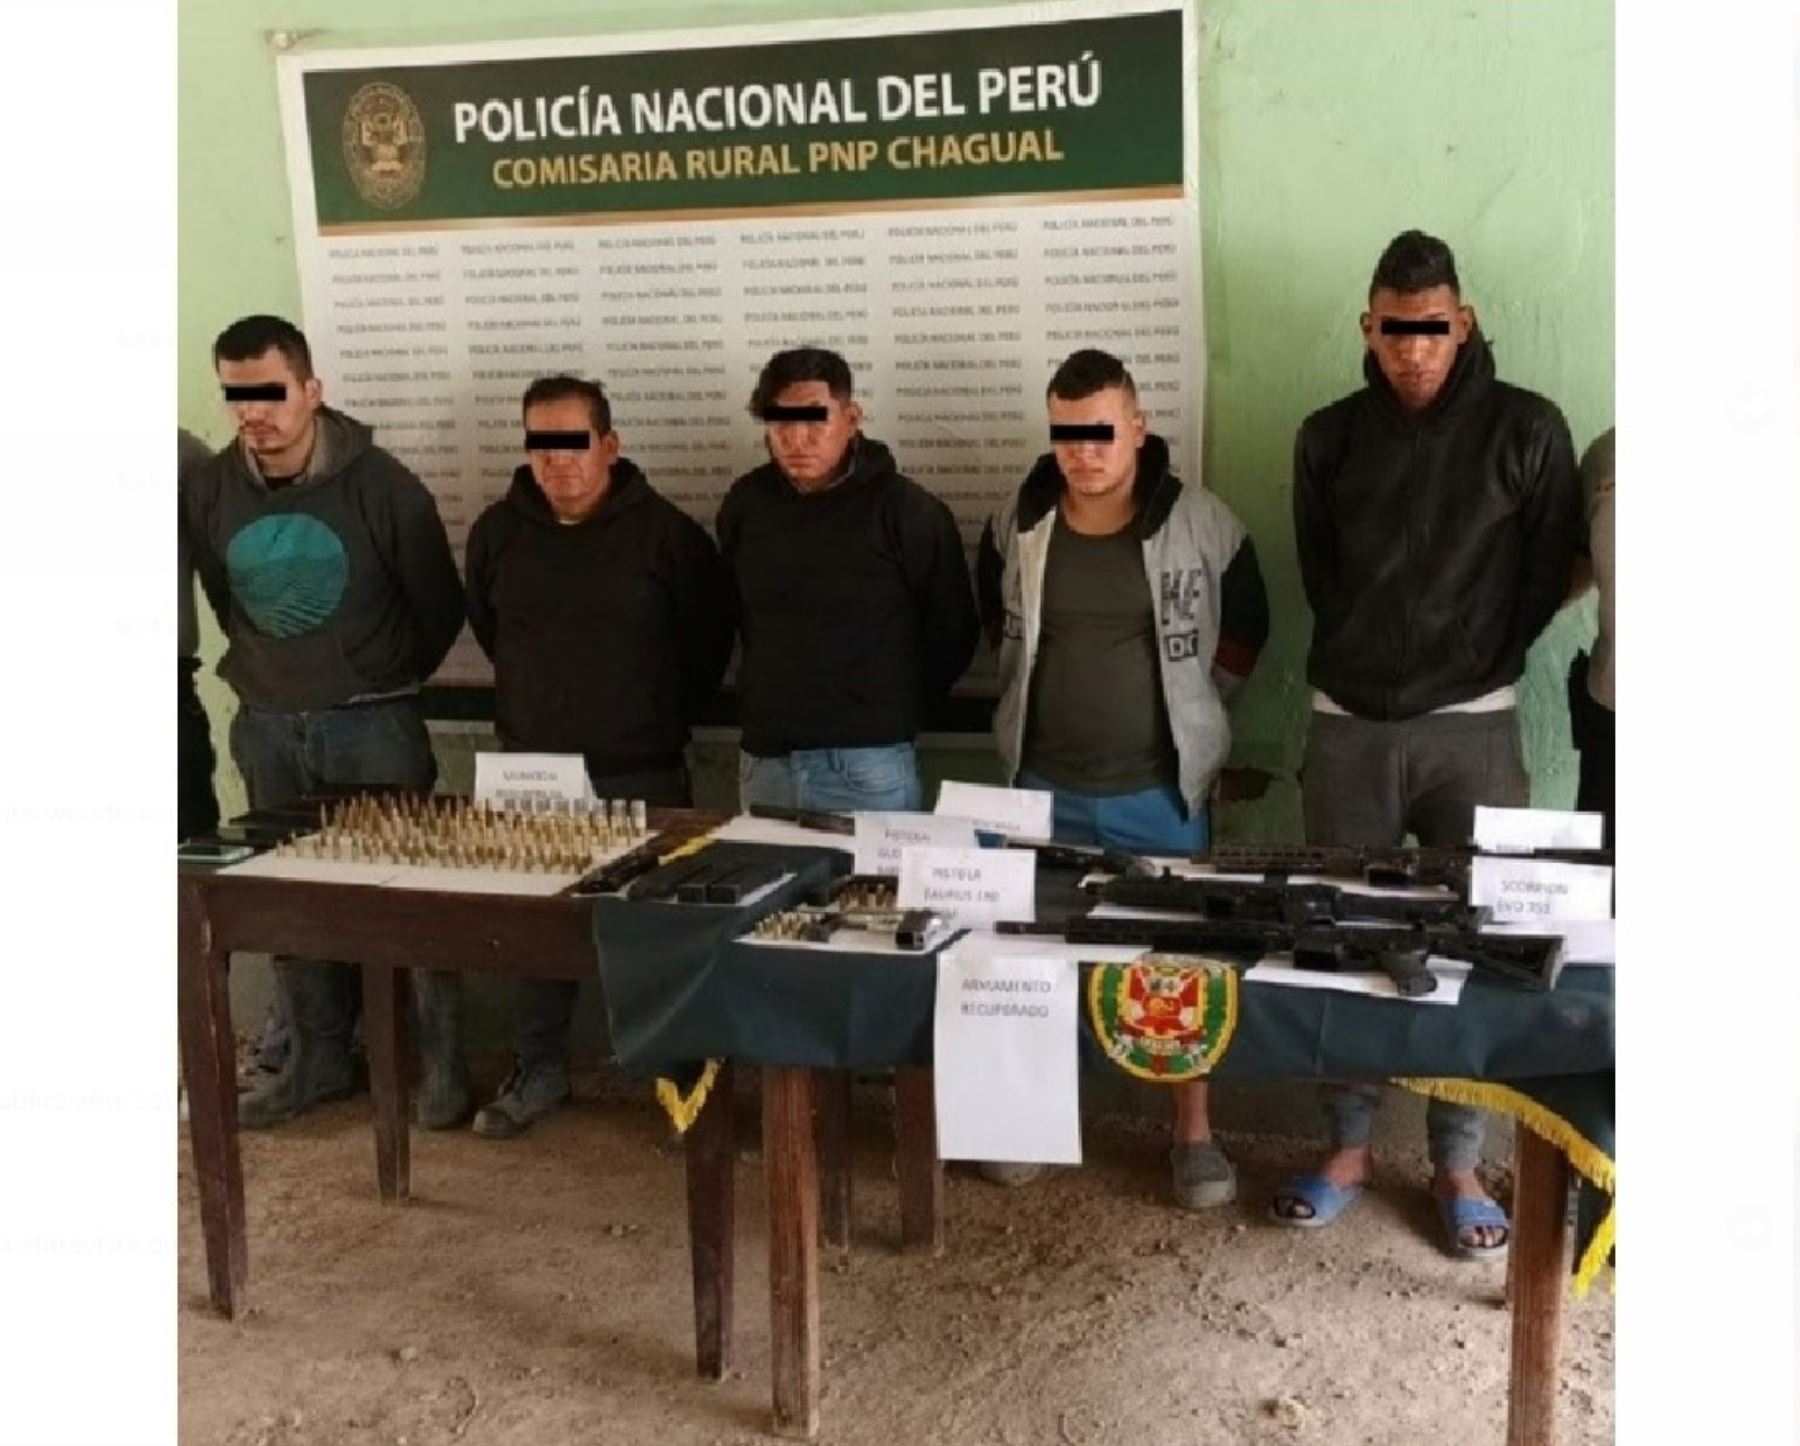 La Policía Nacional incautó armas de largo alcance y detuvo a siete personas en Pataz durante dos intervenciones contra bandas delincuenciales que operan en zonas de minería artesanal e ilegal. Foto: ANDINA/difusión.